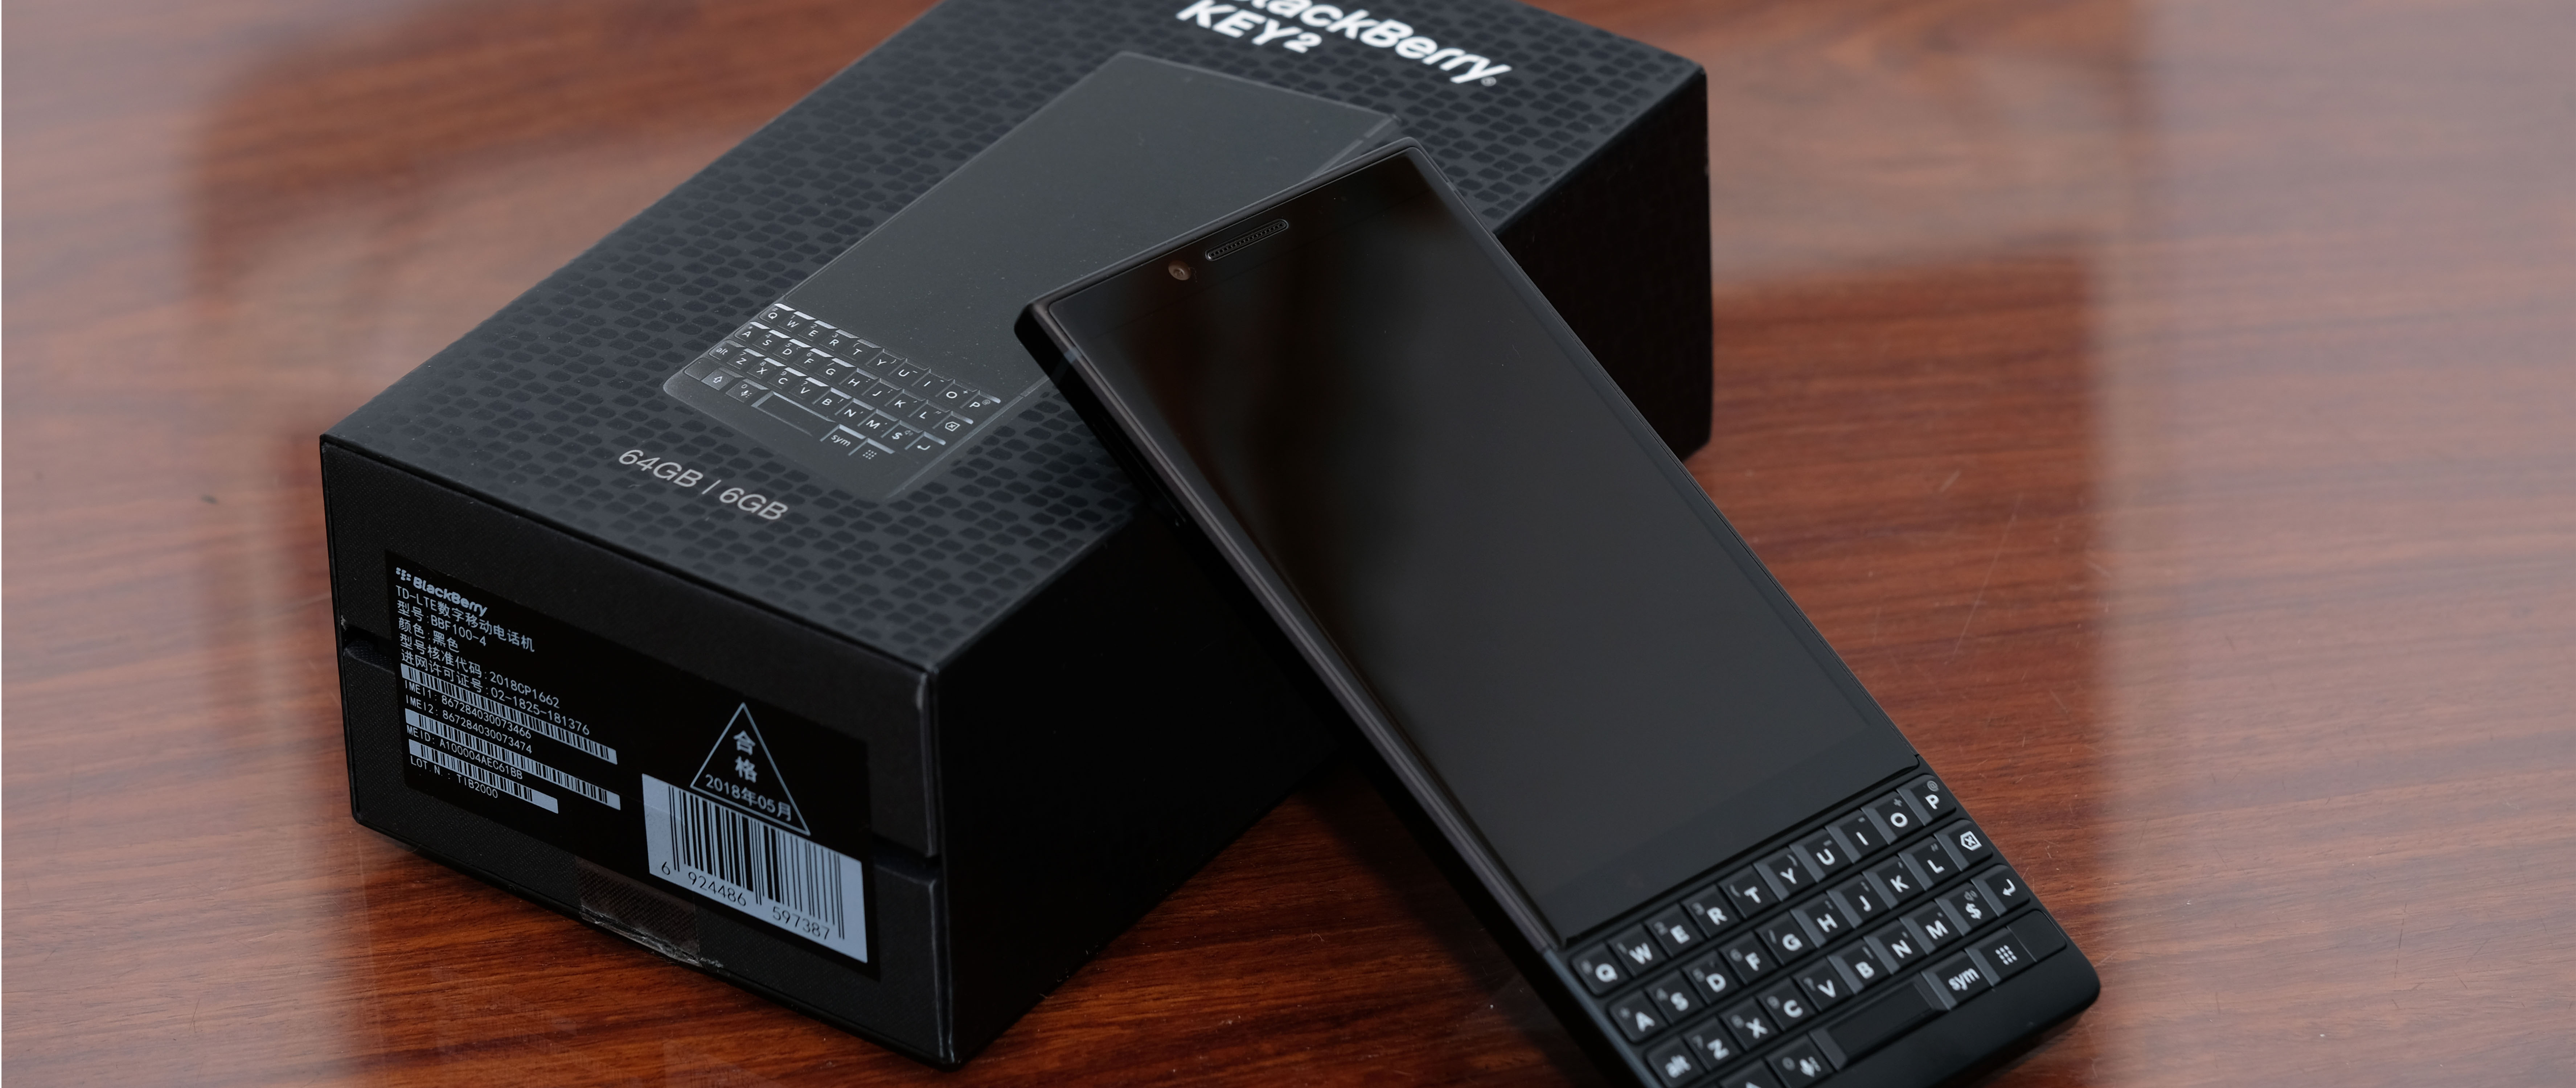 实体键盘的情怀和骄傲—BlackBerry 黑莓 Key2 手机开箱